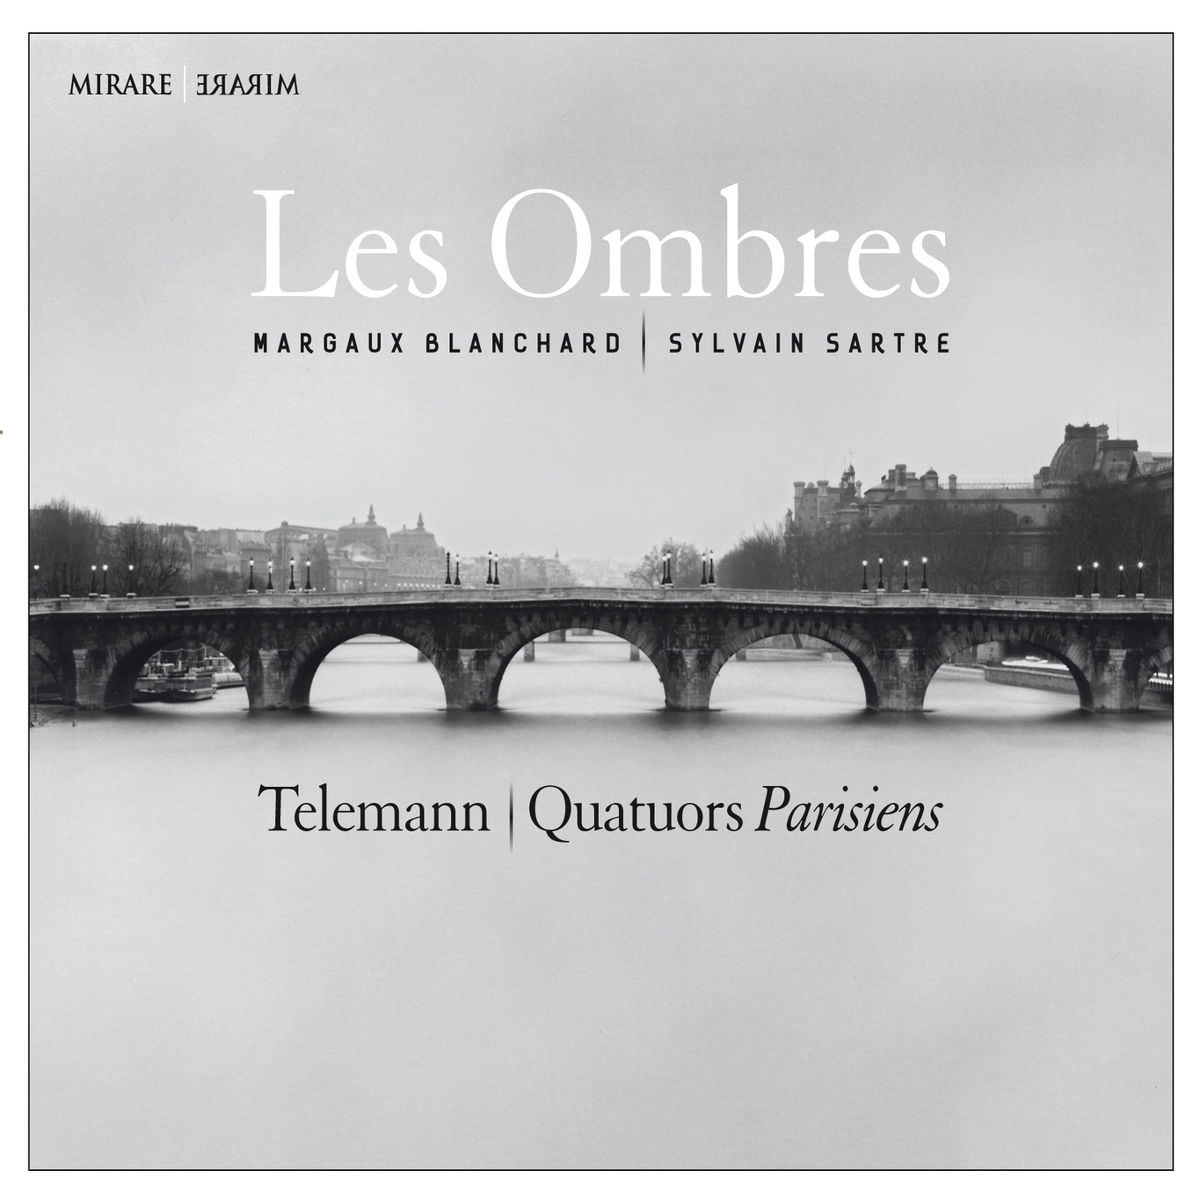 Les Ombres, Margaux Blanchard & Sylvain Sartre – Telemann: Quatuors Parisiens (2014) [FLAC 24bit/88,2kHz]